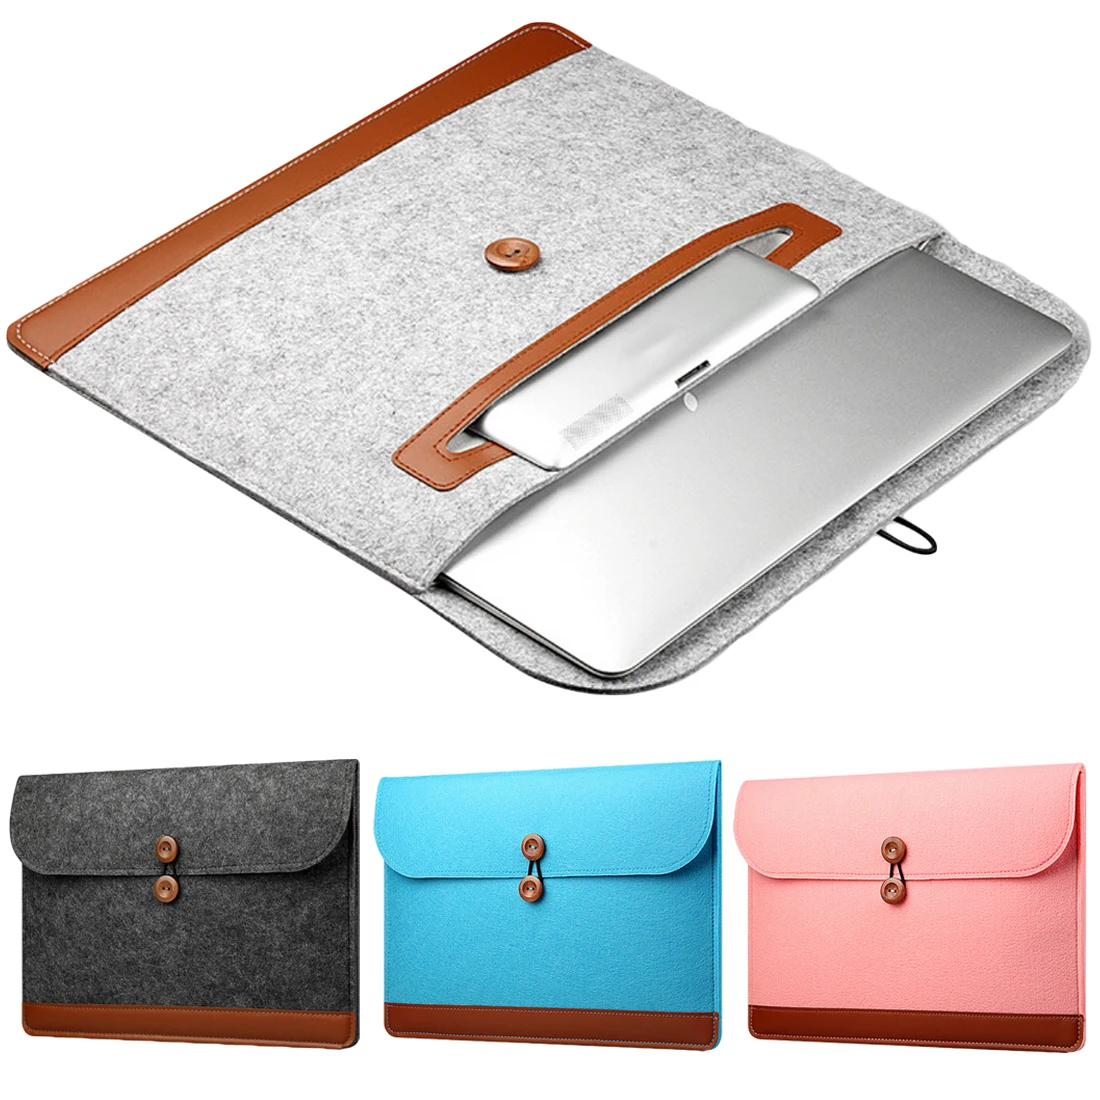 Centechia Модный мягкий чехол-сумка для Apple Macbook Air Pro retina 11 12 13 15 ноутбук с защитой от царапин